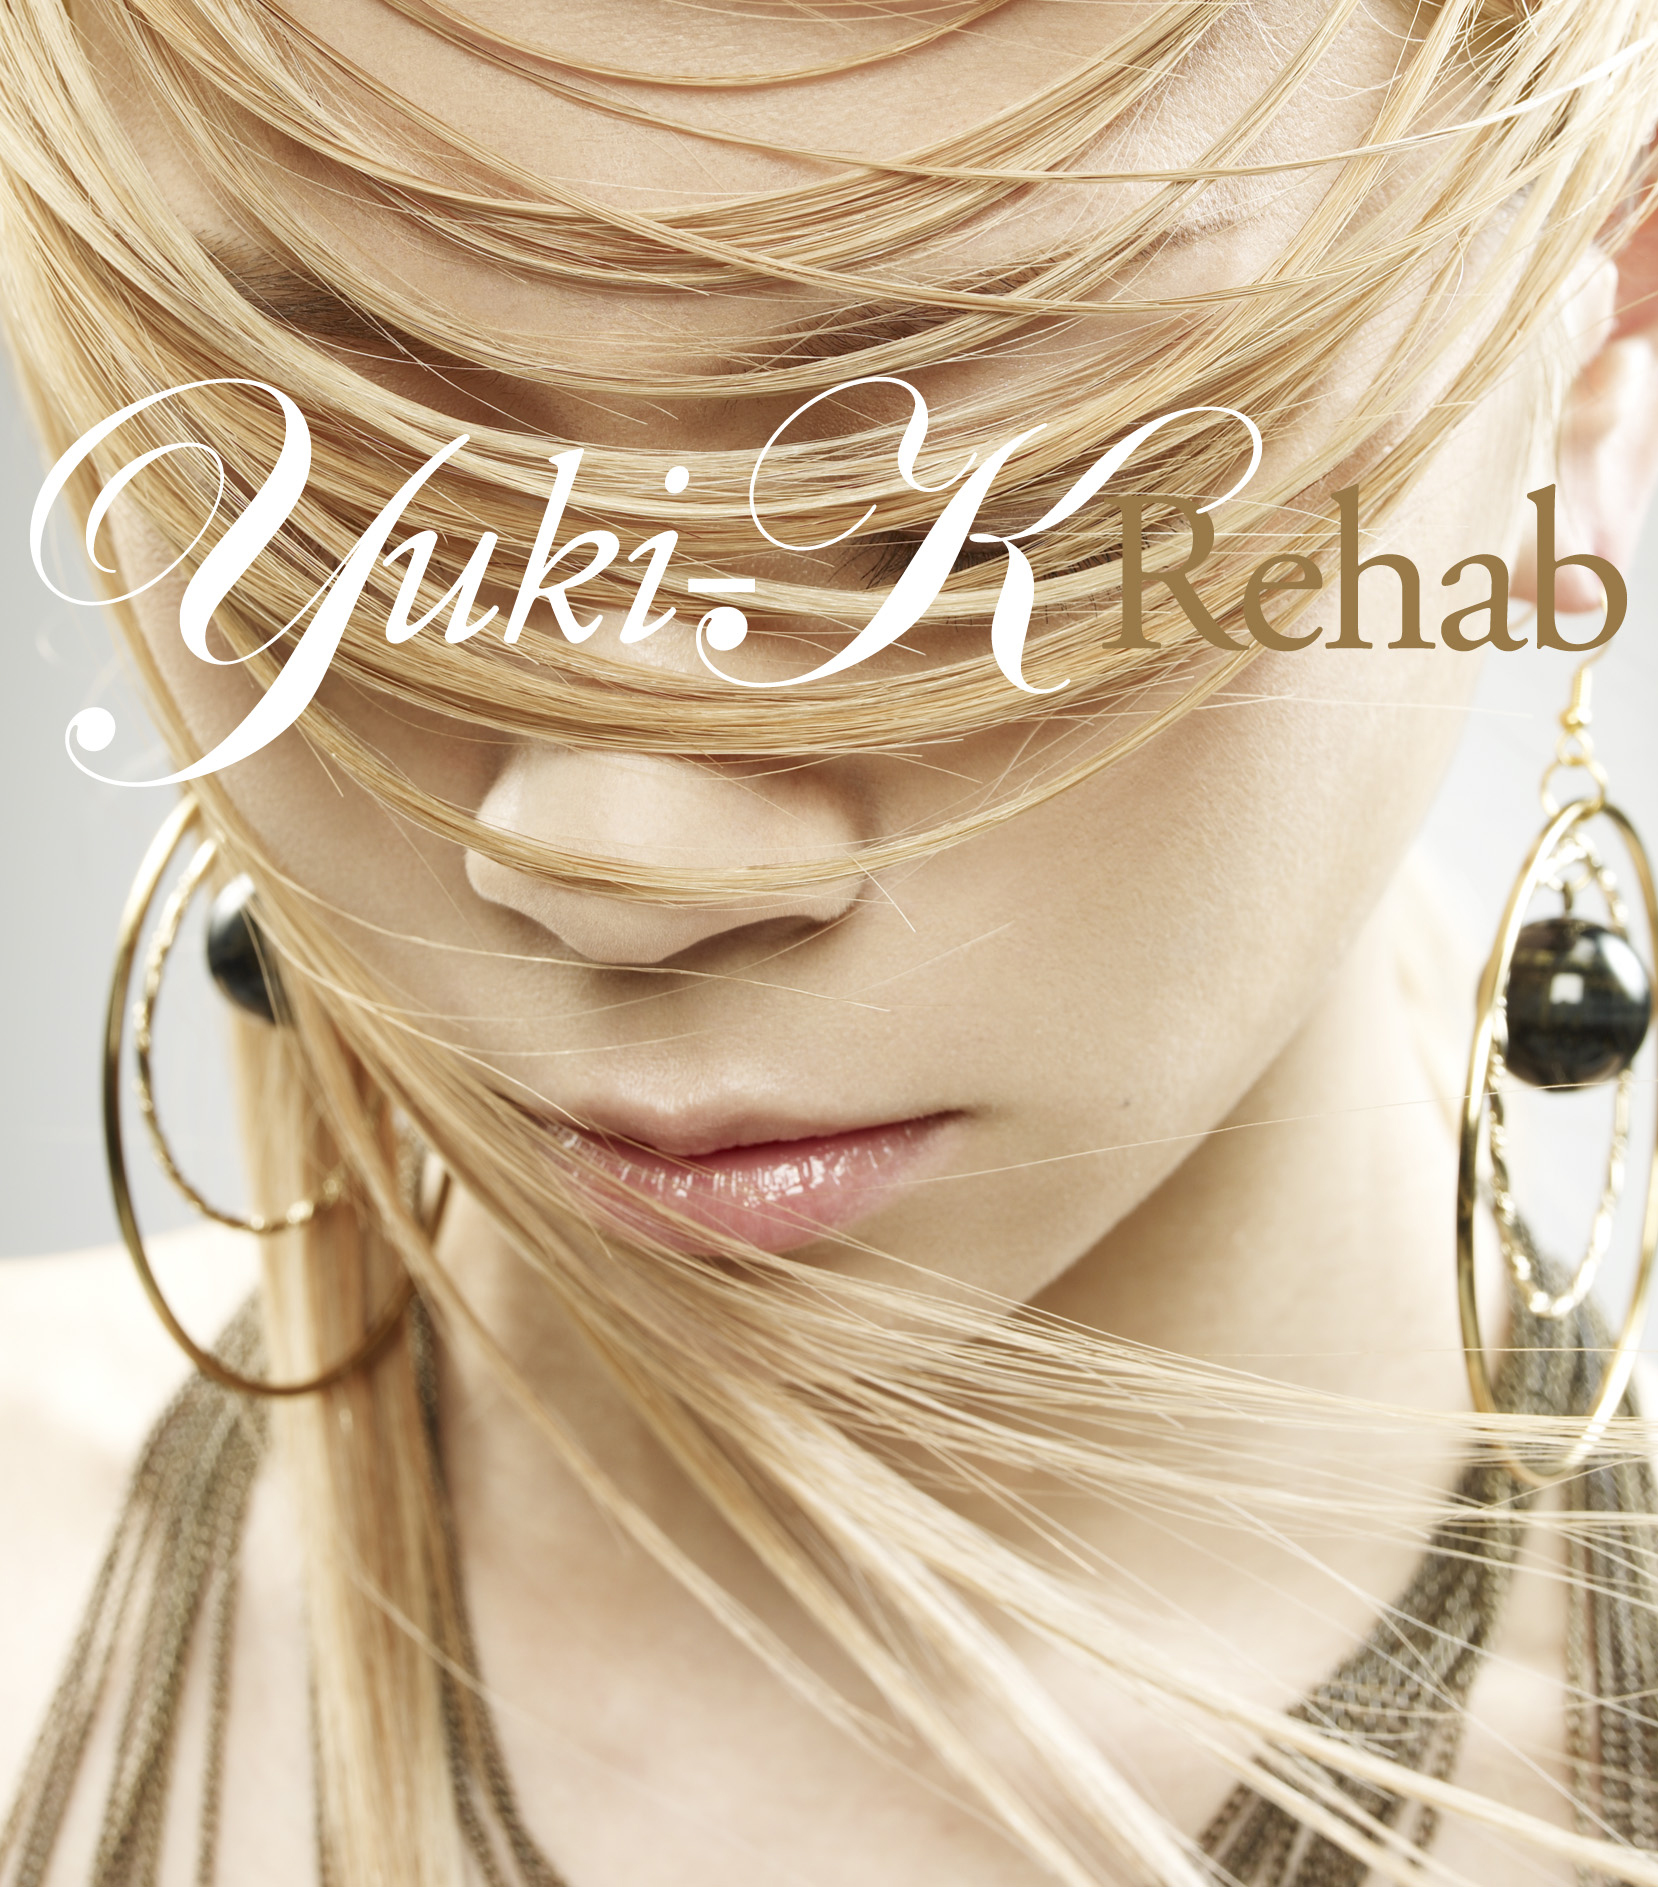 Yuki-K 「Rehab」